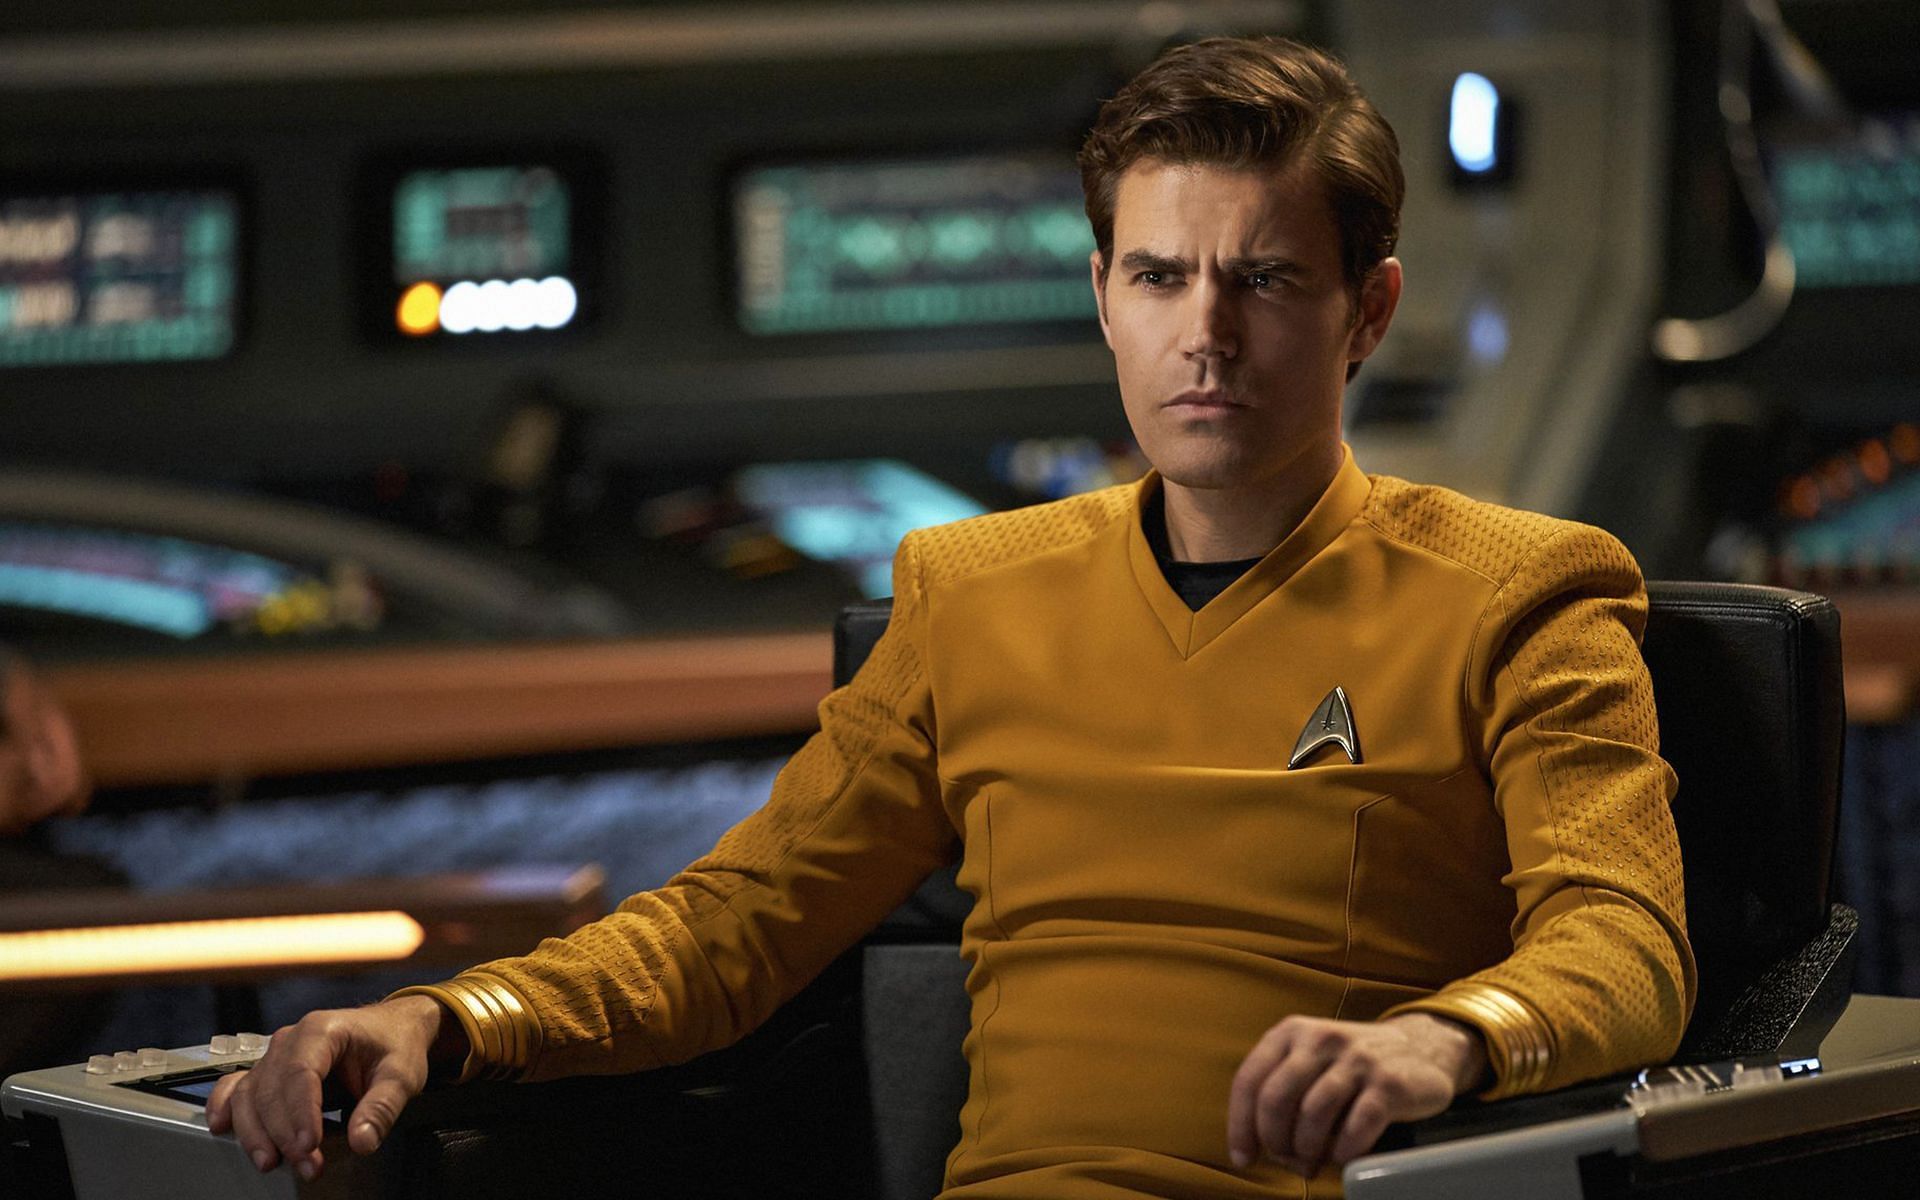 Paul Wesley will play Captain Kirk in the Star Trek series. (Image via @StarTrekOnPPlus/Twitter)